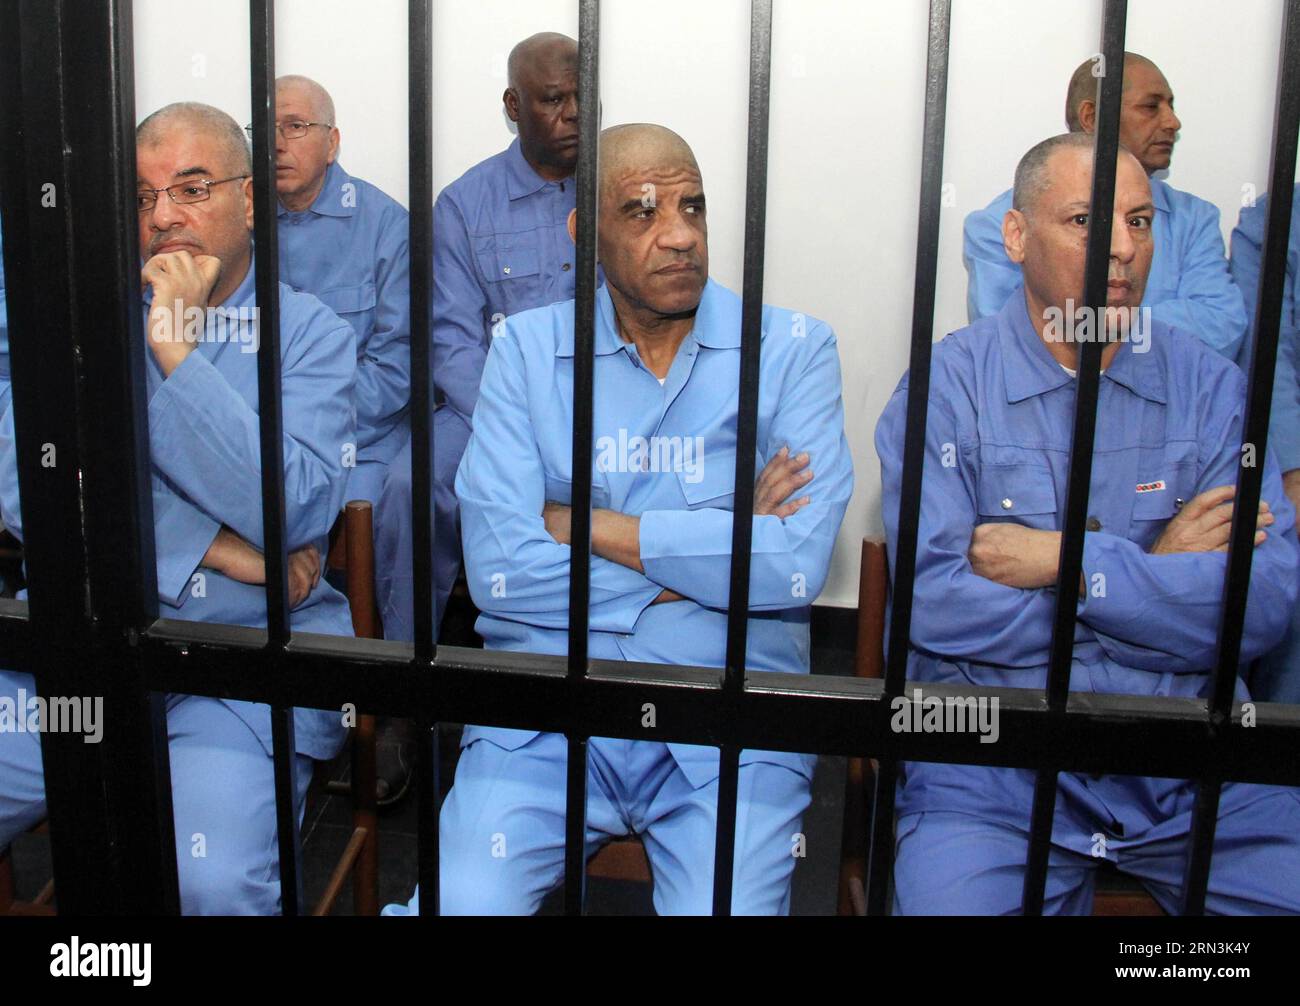 (150420) -- TRIPOLI, 20. April 2015 -- der ehemalige Geheimdienstchef Abdullah al-Senussi (C) wird am 20. April 2015 in Tripoli, der Hauptstadt Libyens, vor einem Berufungsgericht gesehen. Das Gericht vertagte am Montag den Prozess gegen 37 Personen des verstorbenen Herrschers Muammar Gaddafi-Regime bis zum 3. Mai, so ein Beamter im Generalstaatsanwalt. ) (Zjy) LIBYEN-TRIPOLI-EHEMALIGER BEAMTENPROZESS HamzaxTurkia PUBLICATIONxNOTxINxCHN Tripoli 20. April 2015 ehemaliger Geheimdienstchef Abdullah Al C IST AM 20. April 2015 vor dem Berufungsgericht in der libyschen Hauptstadt TRIPOLI eingetroffen Stockfoto